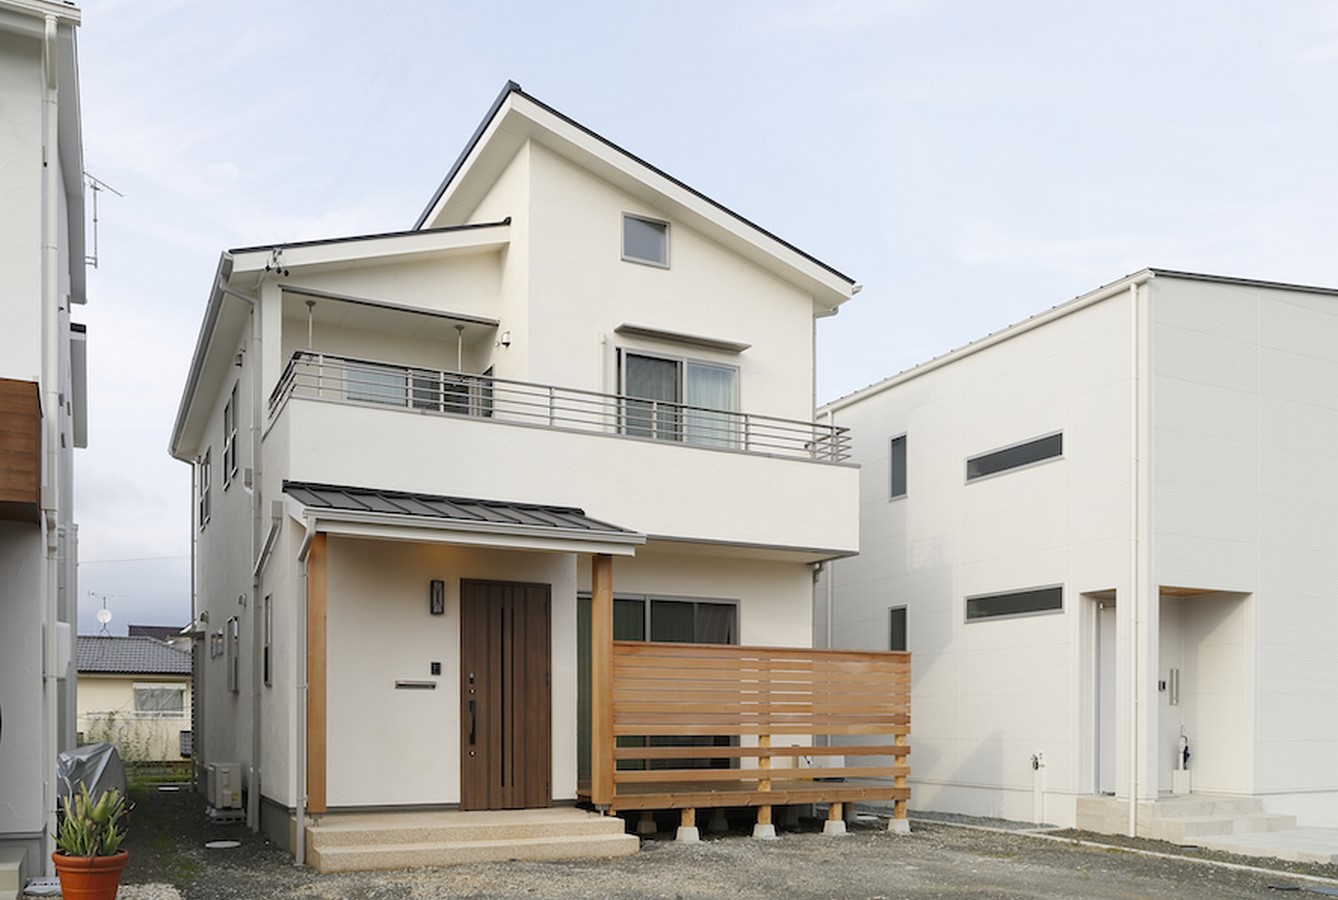 Architects in Shizuoka - Top 15 Architects in Shizuoka - Sheet7